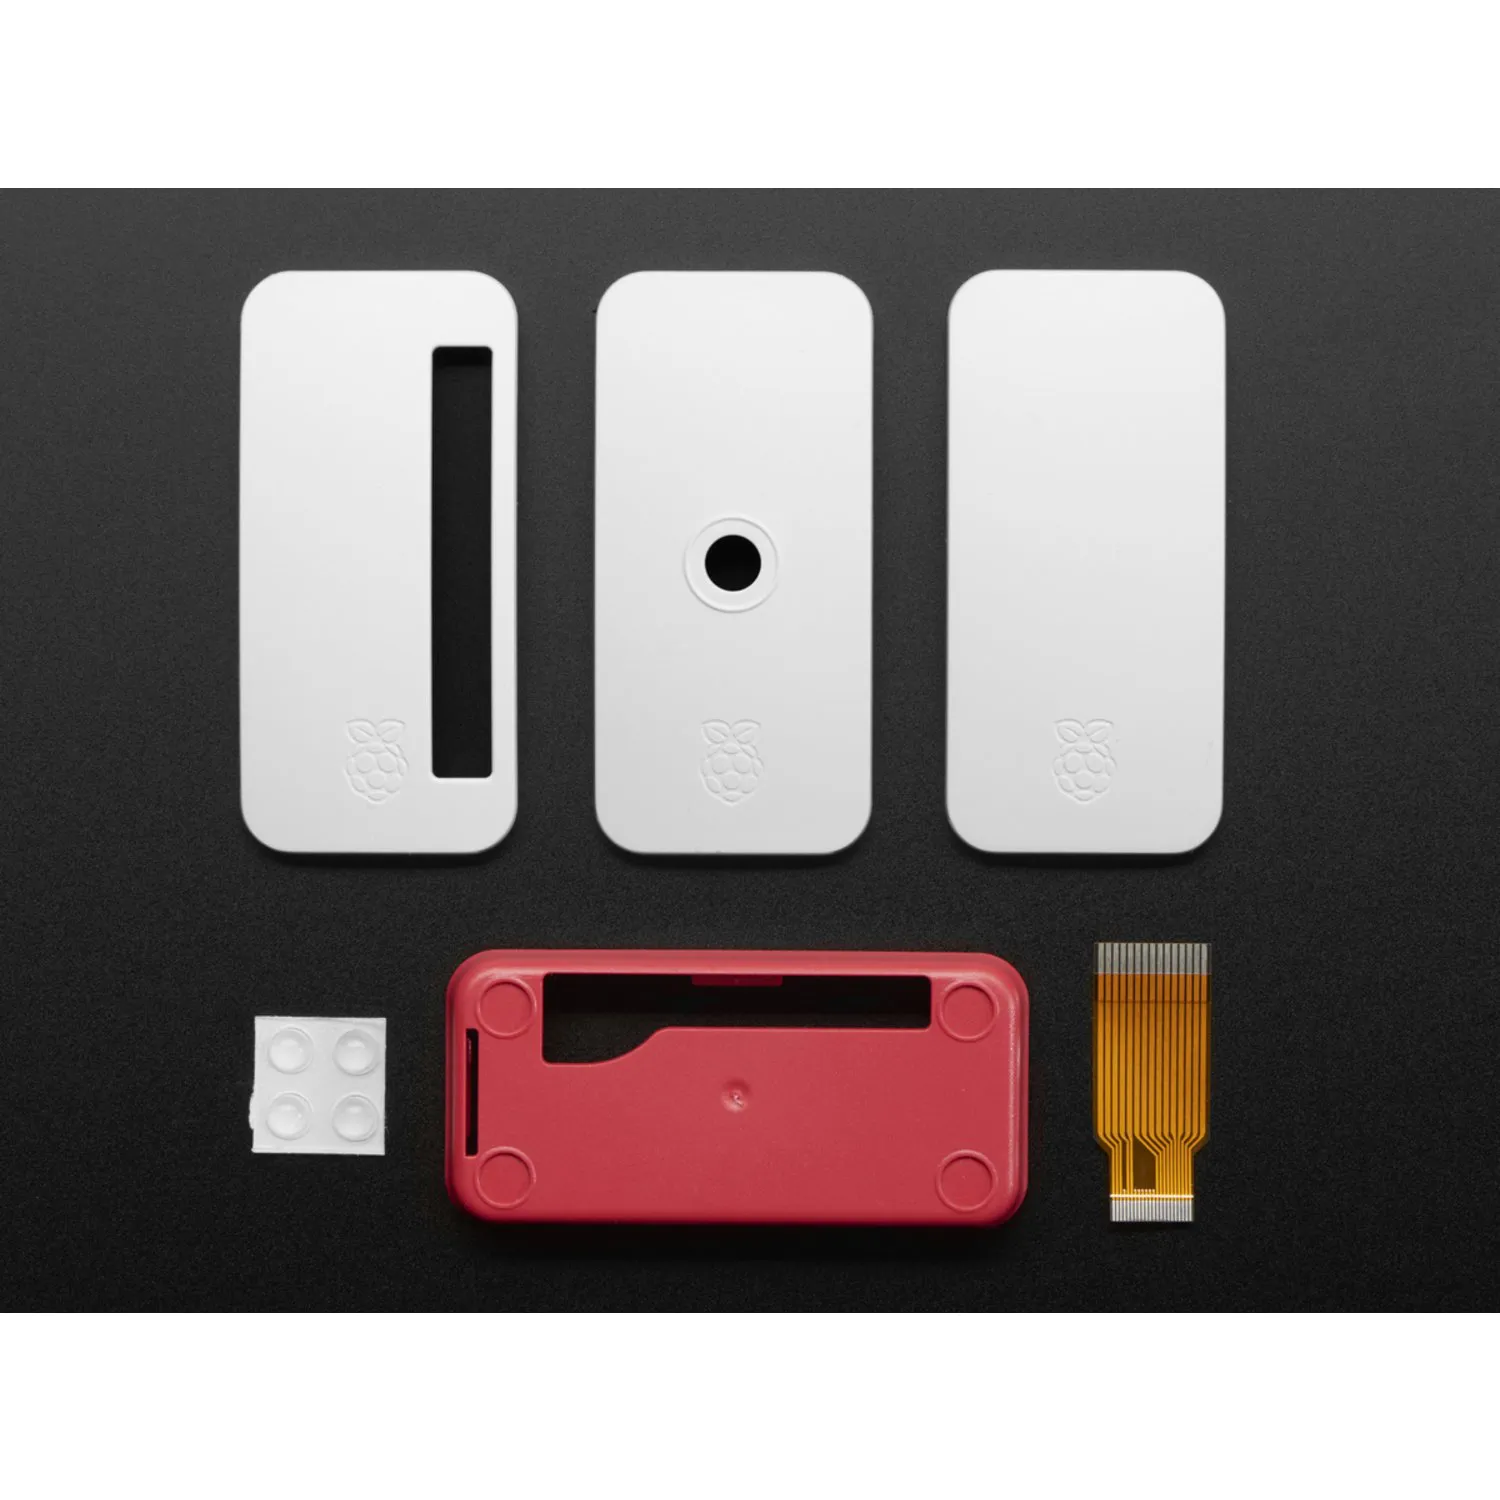 Photo of Pi Foundation Raspberry Pi Zero Case + Mini Camera Cable